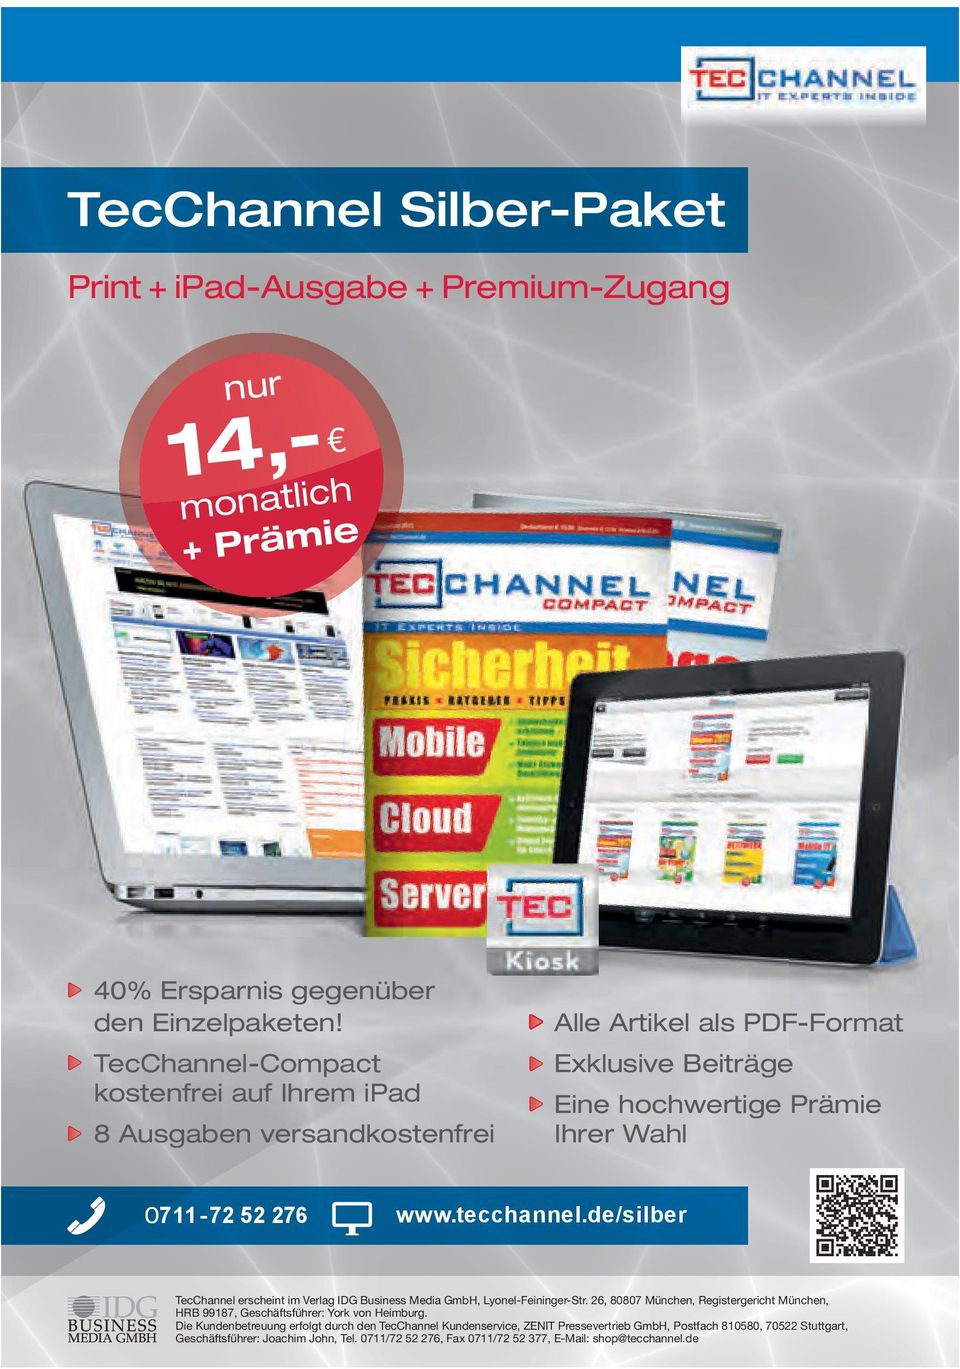 tecchannel.de/silber TecChannel erscheint im Verlag IDG Business Media GmbH, Lyonel-Feininger-Str.